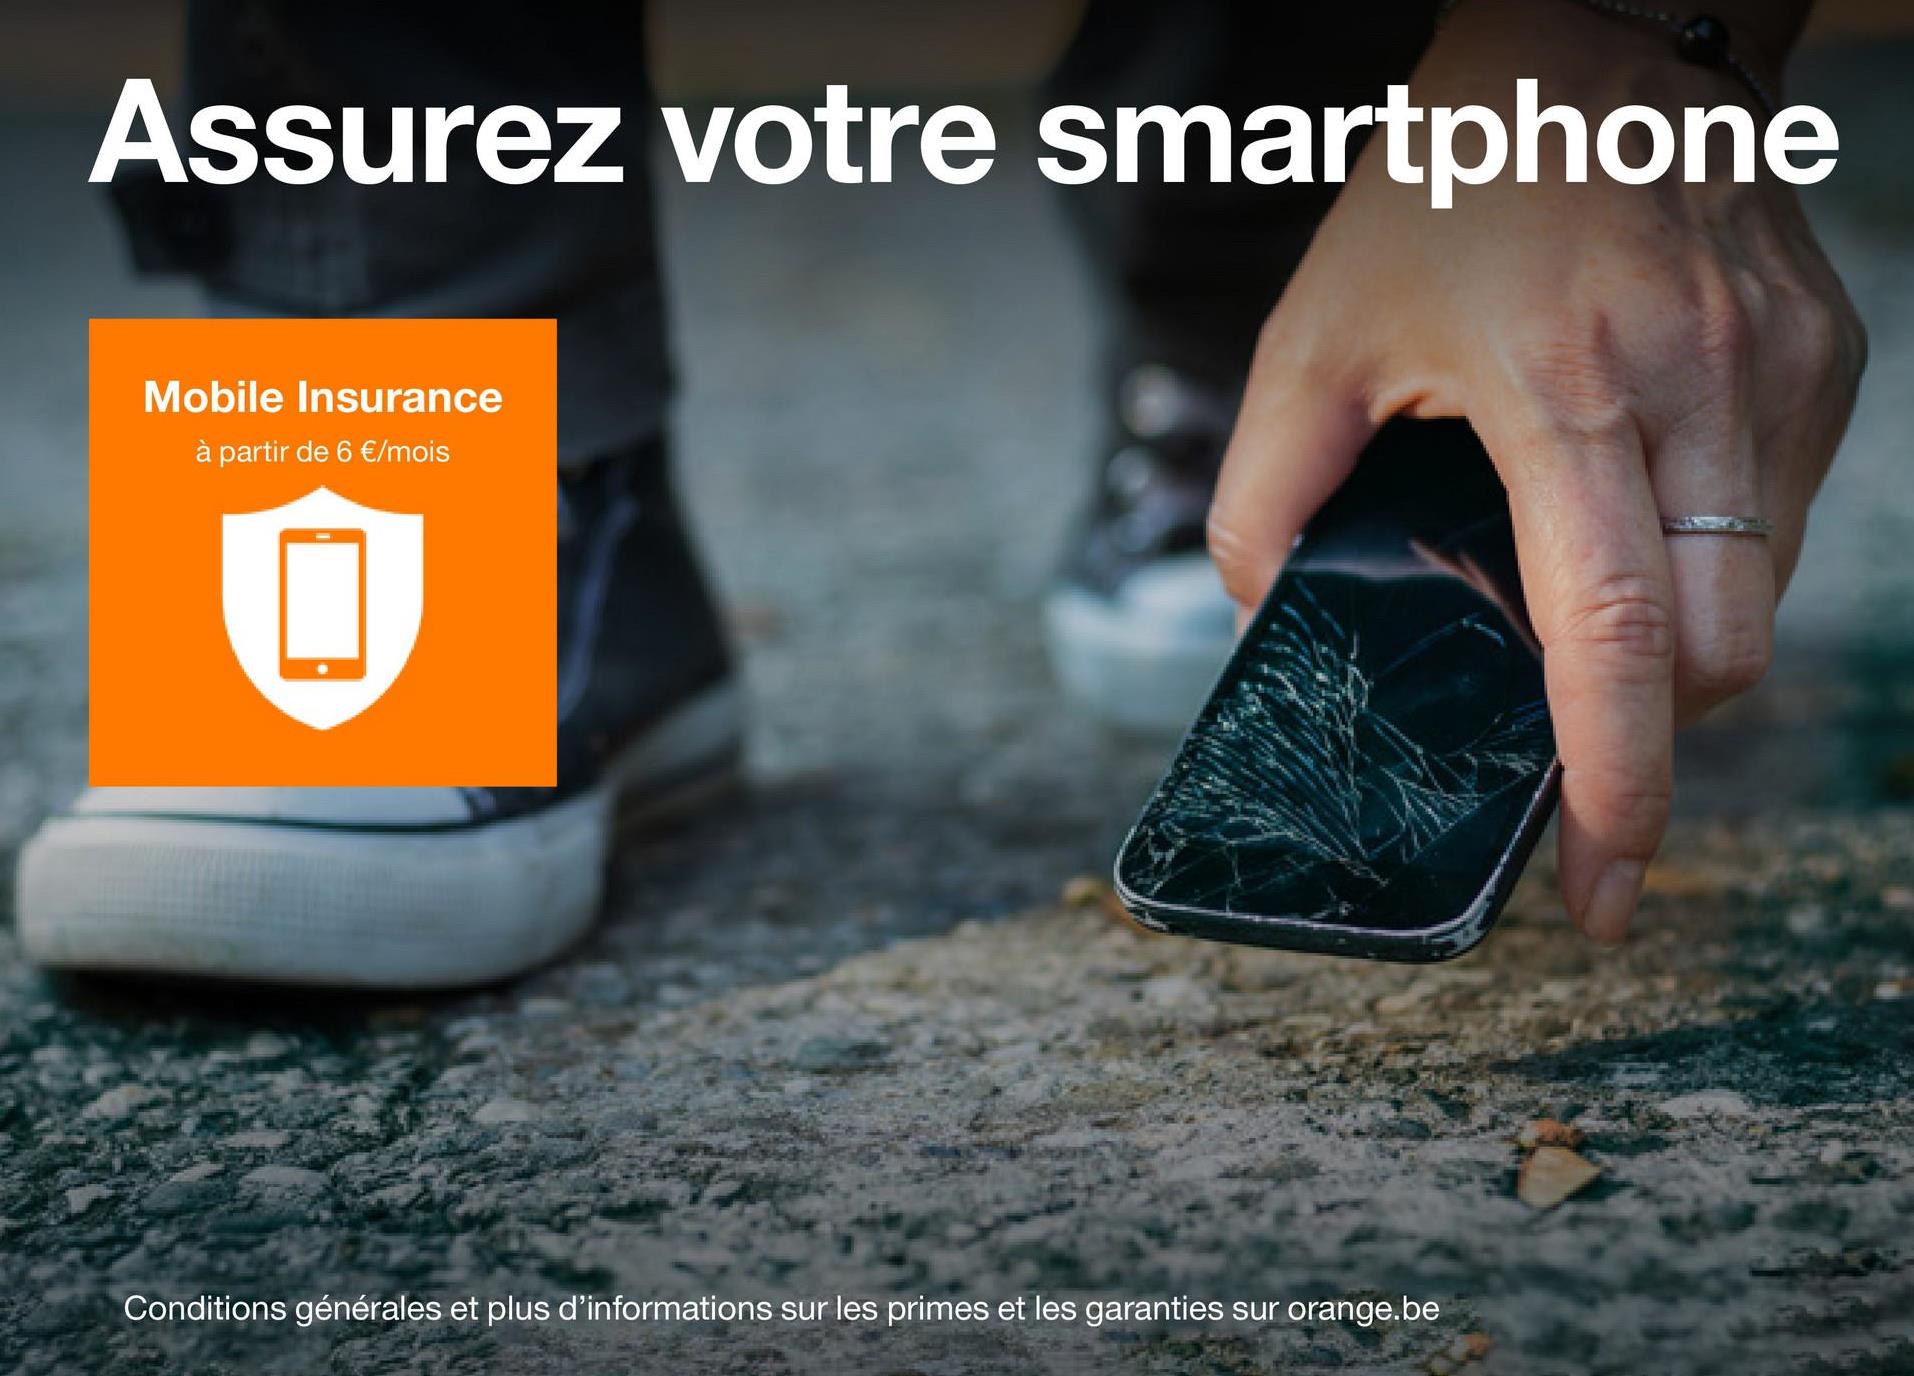 Assurez votre smartphone
Mobile Insurance
à partir de 6 €/mois
Conditions générales et plus d'informations sur les primes et les garanties sur orange.be